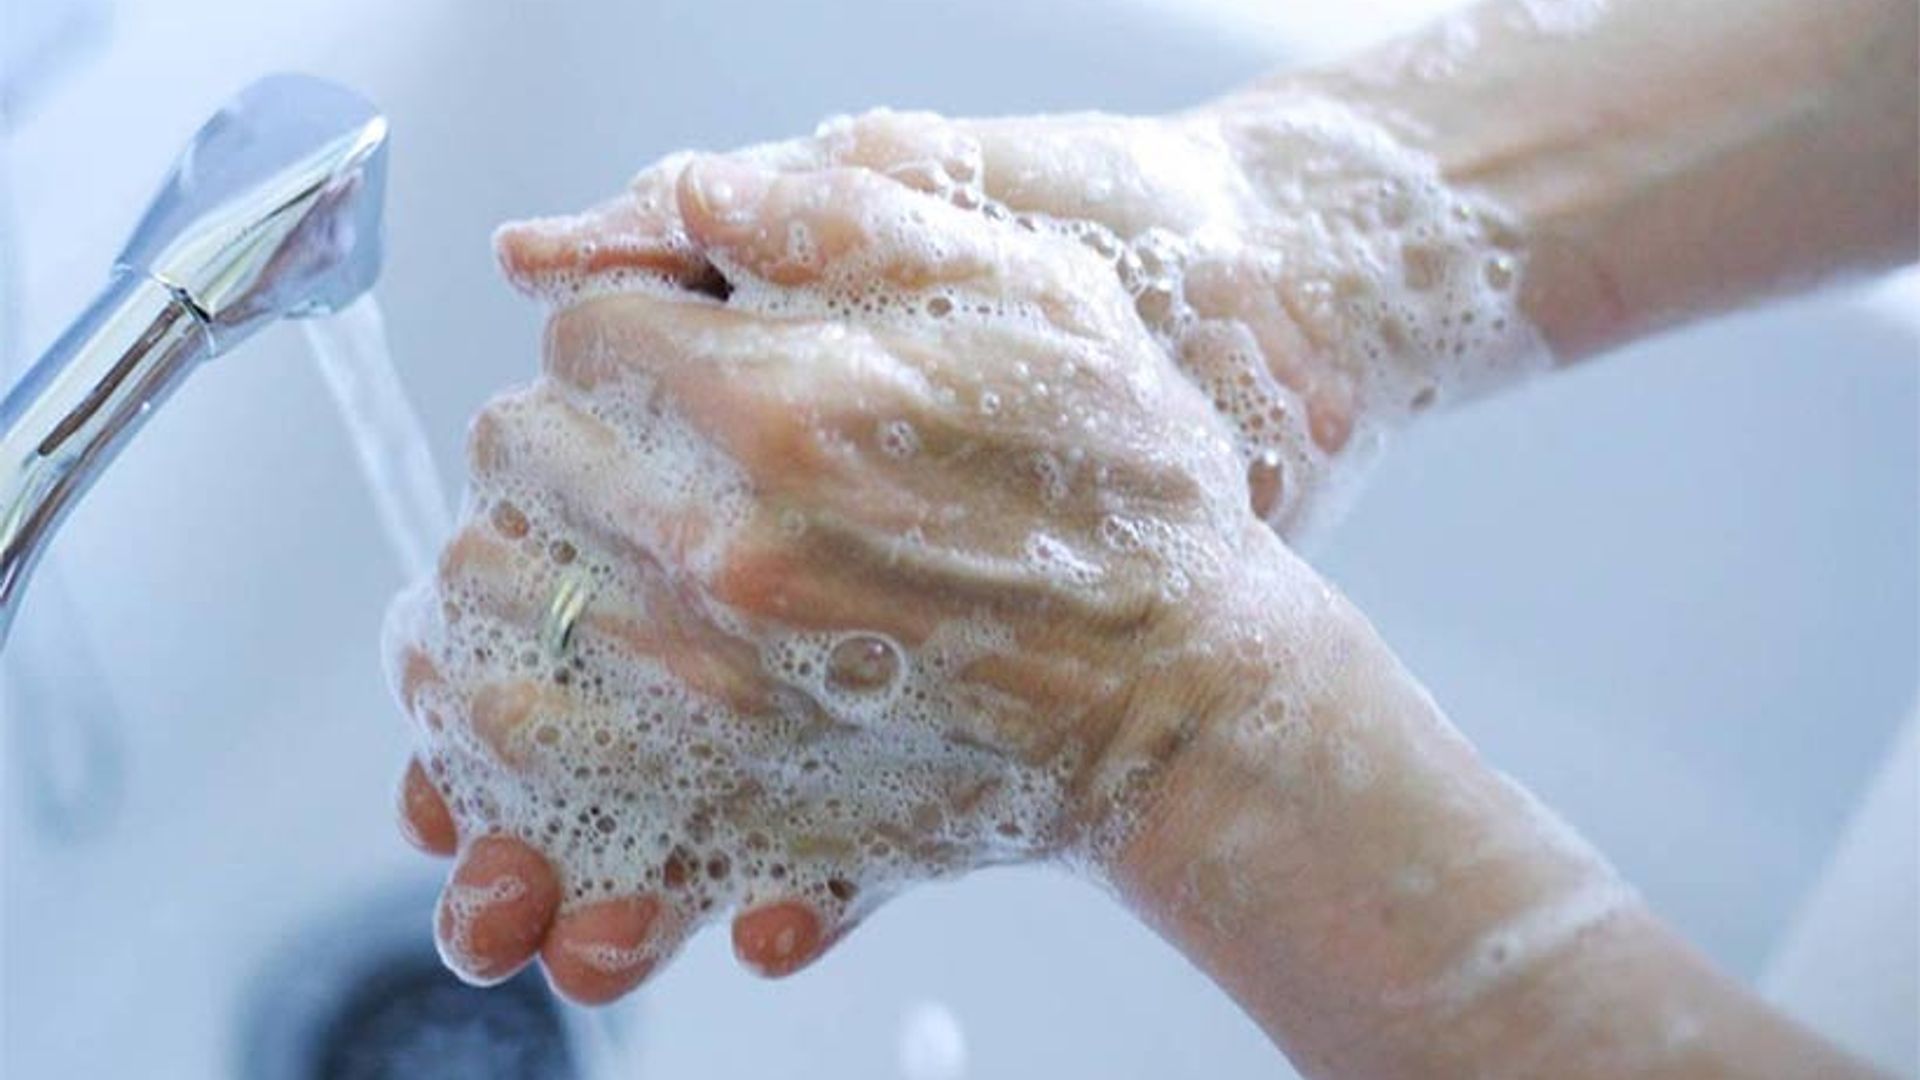 woman washing hands